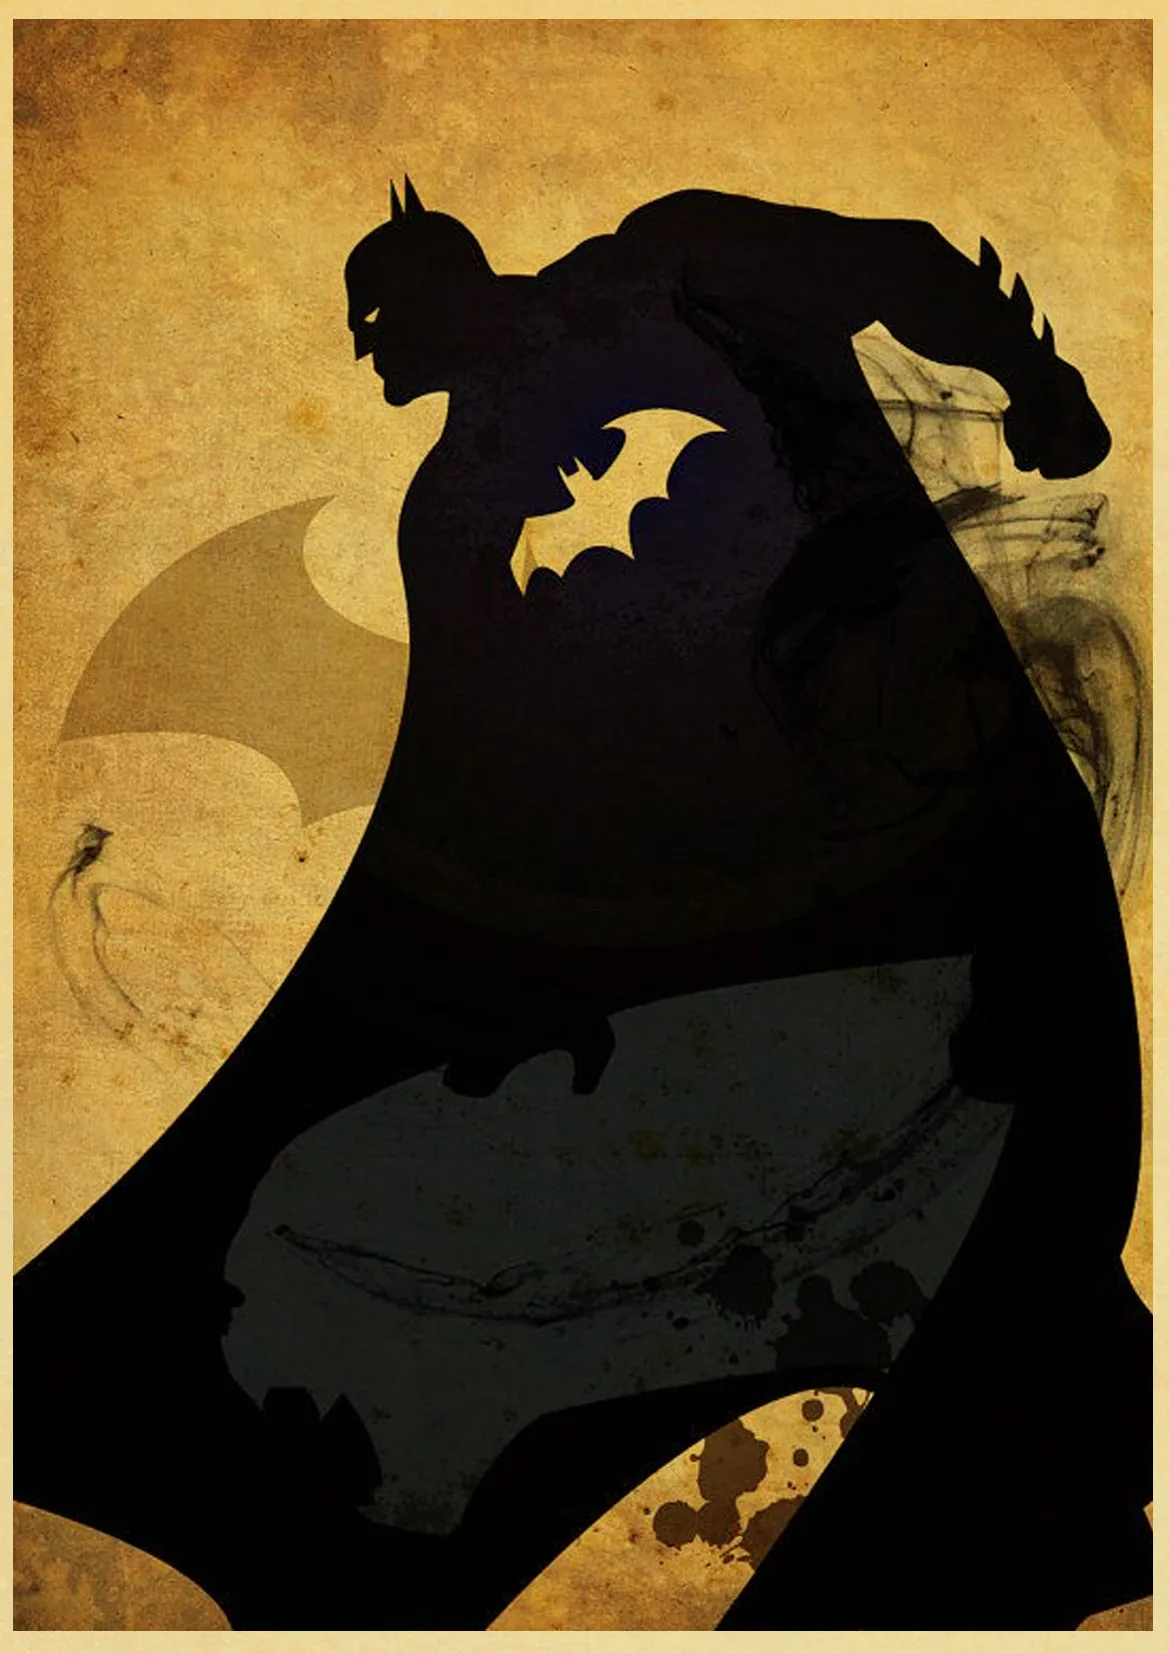 Винтаж Marvel Dc Супер Герои плакат Железный человек Бэтмен художественные принты и плакаты для дома комнаты бар живопись наклейки на стену